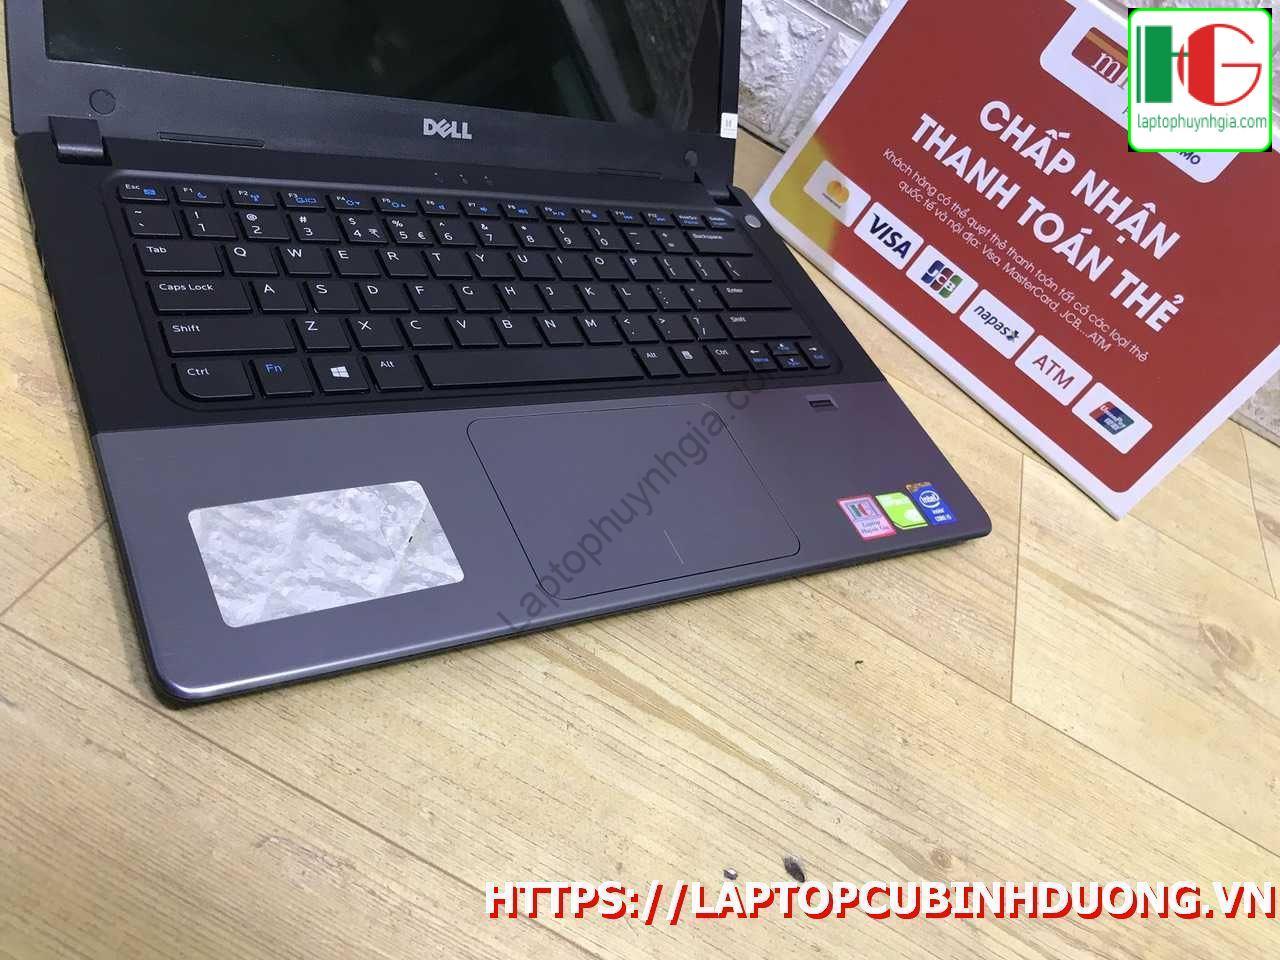 Laptop Dell V5470 I5 4210u 4g Ssd 128g Nvidia Gt820m Laptopcubinhduong.vn [kích Thước Gốc] Result